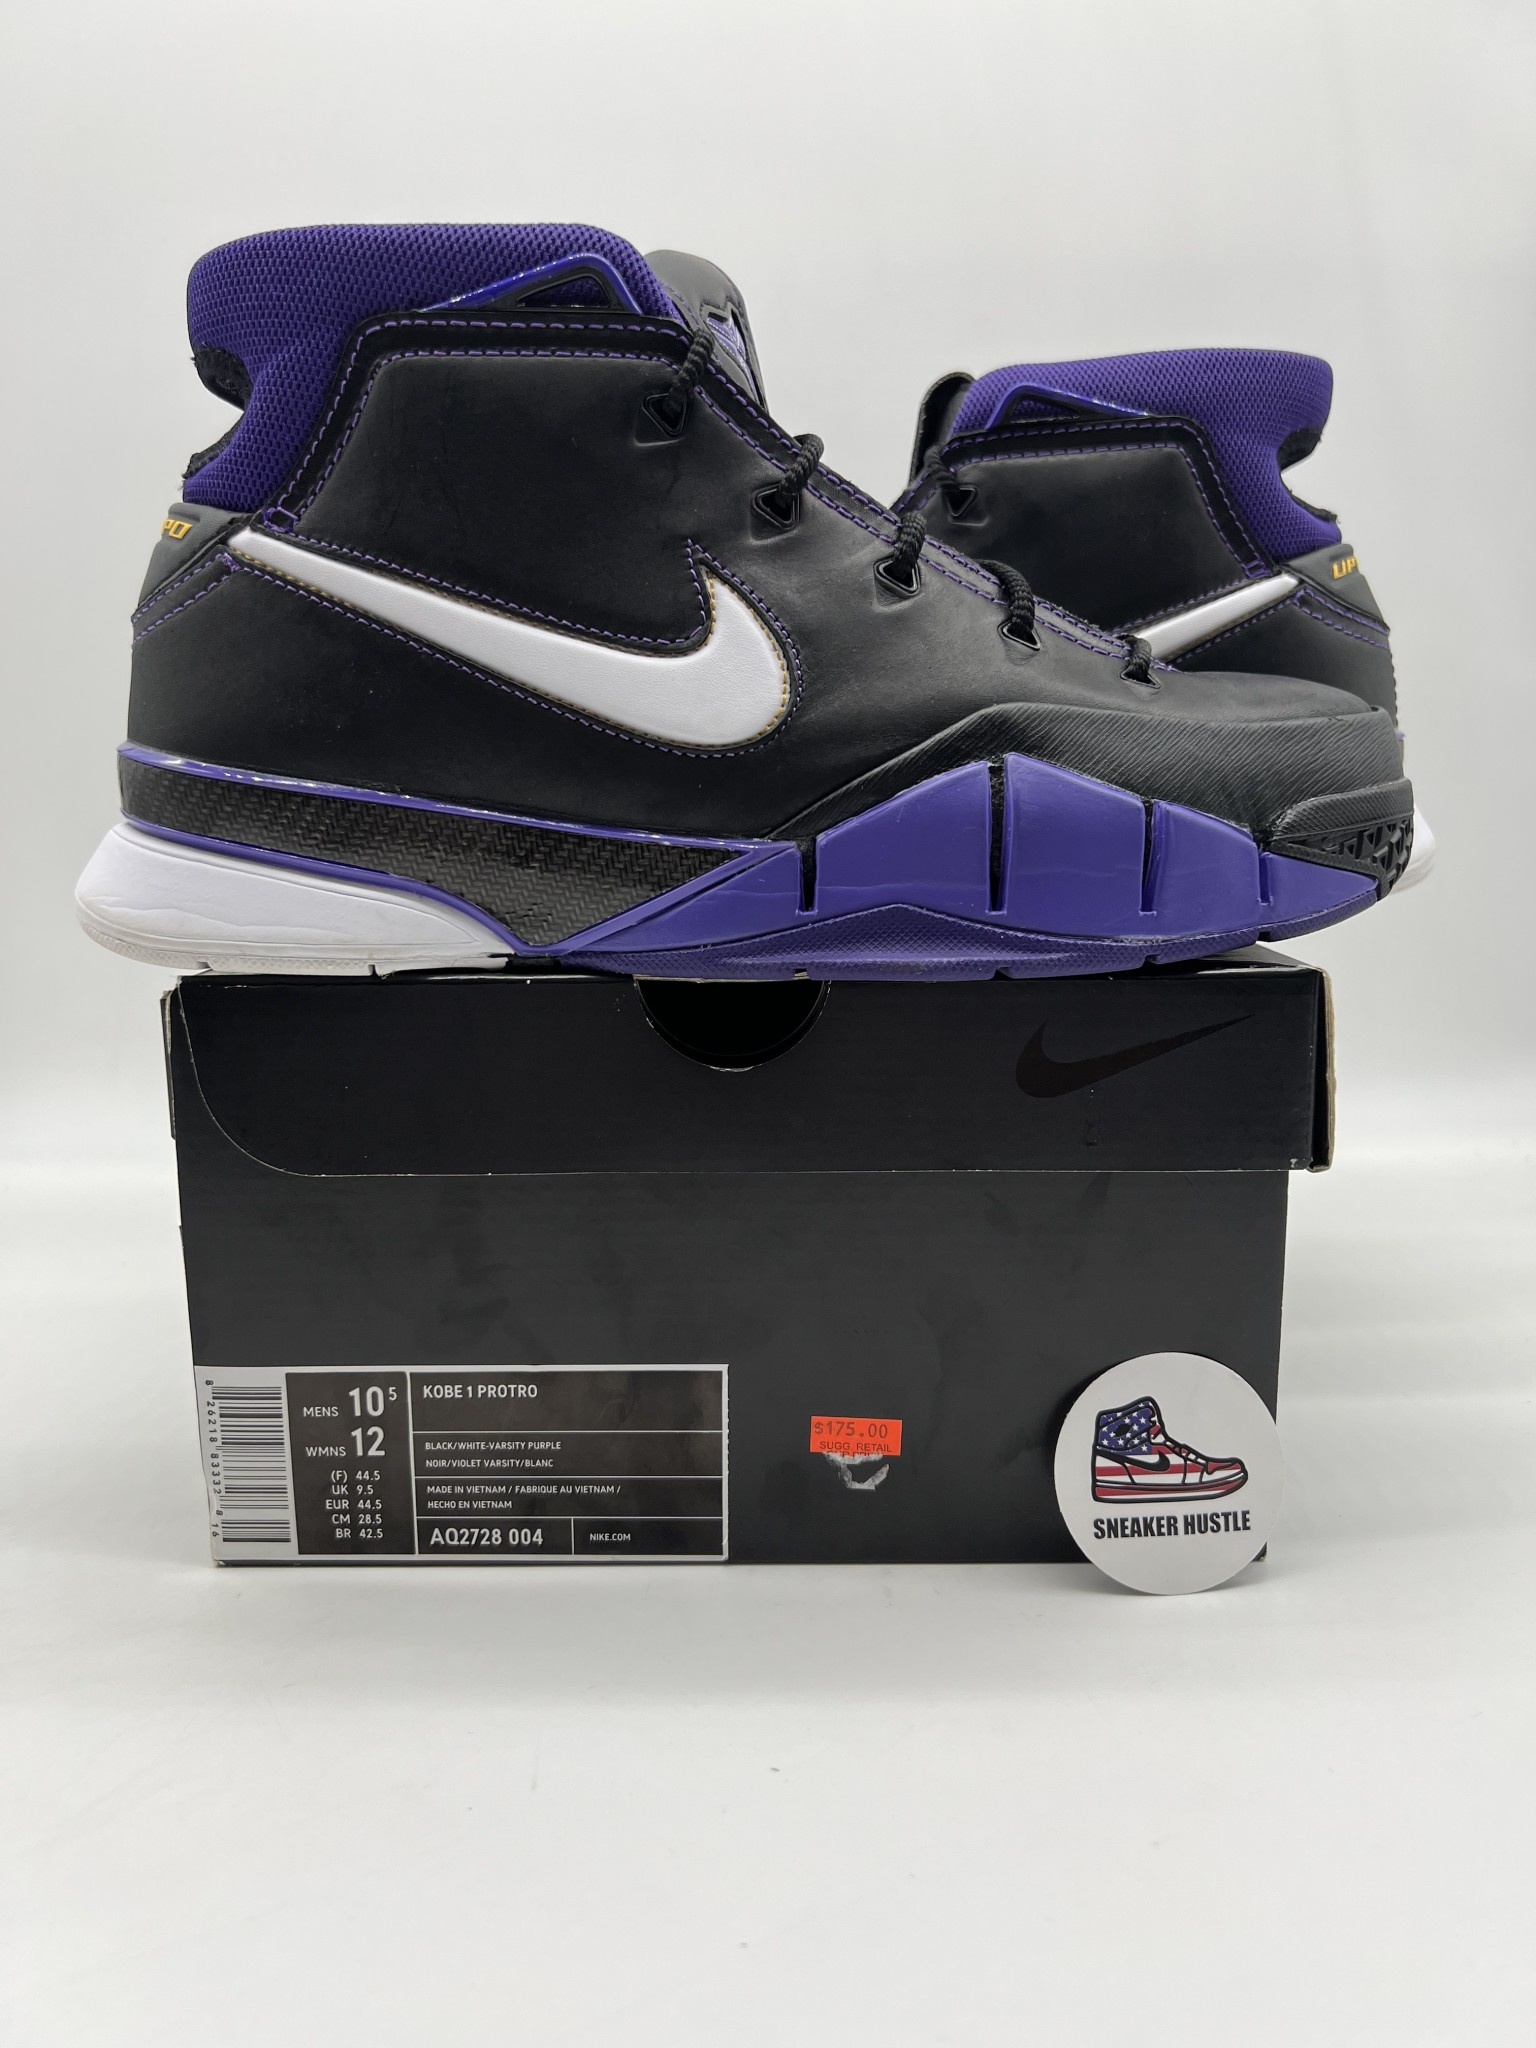 Nike Kobe Protro Purple Reign - Sneaker Hustle